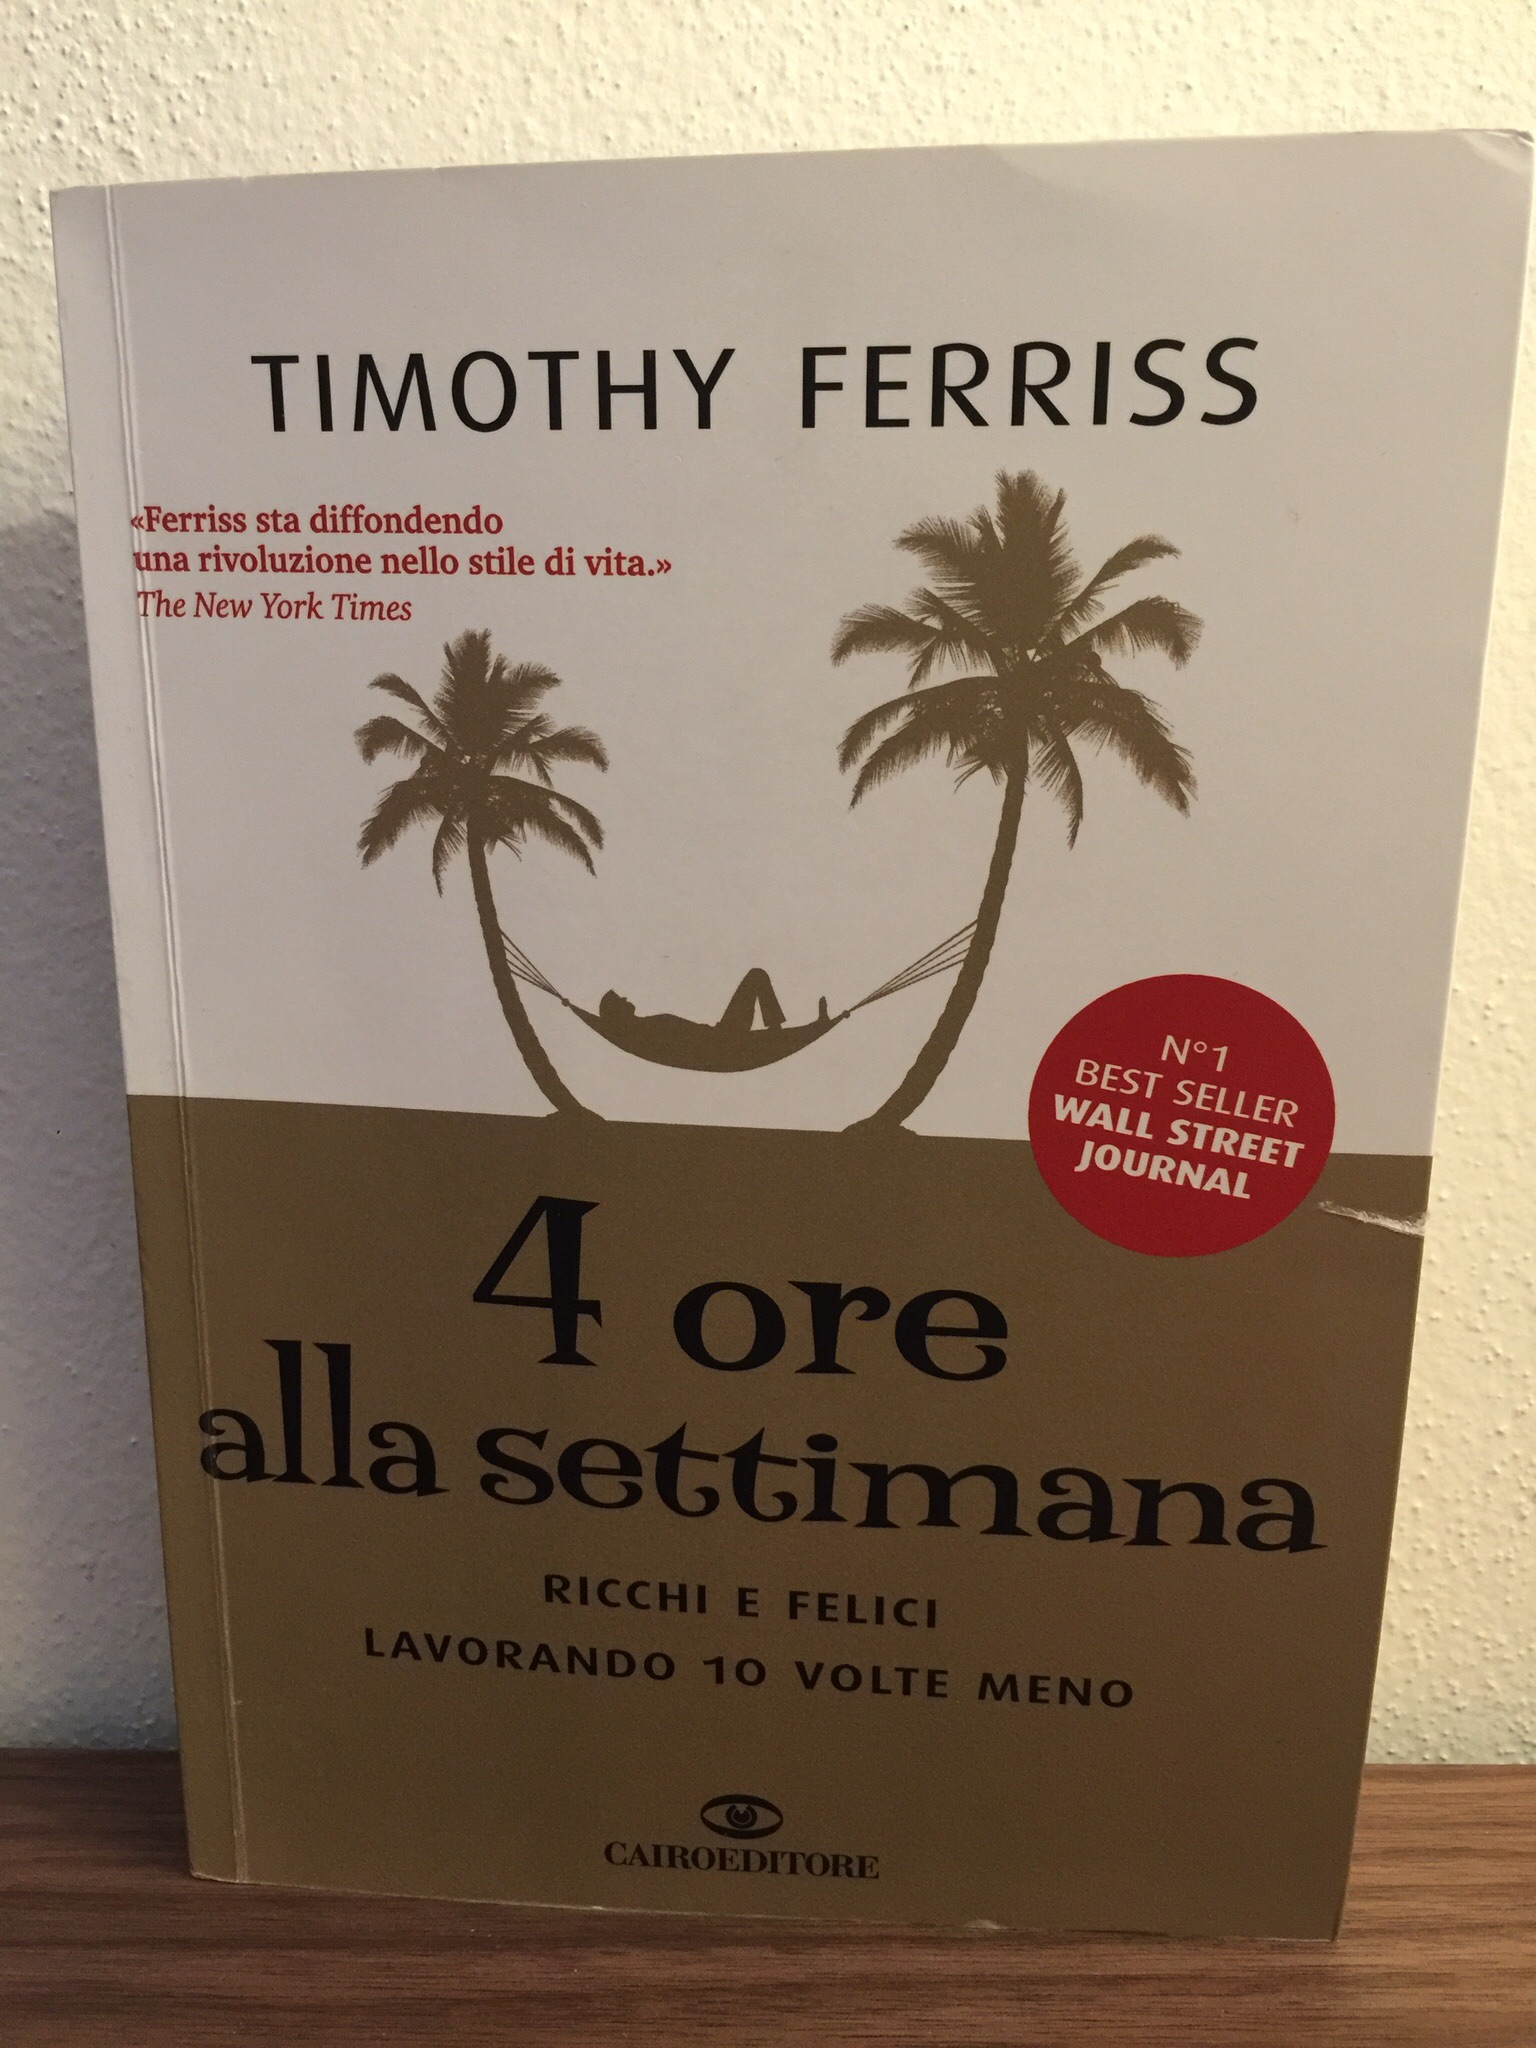 Timothy Ferriss – 4 ore alla settimana